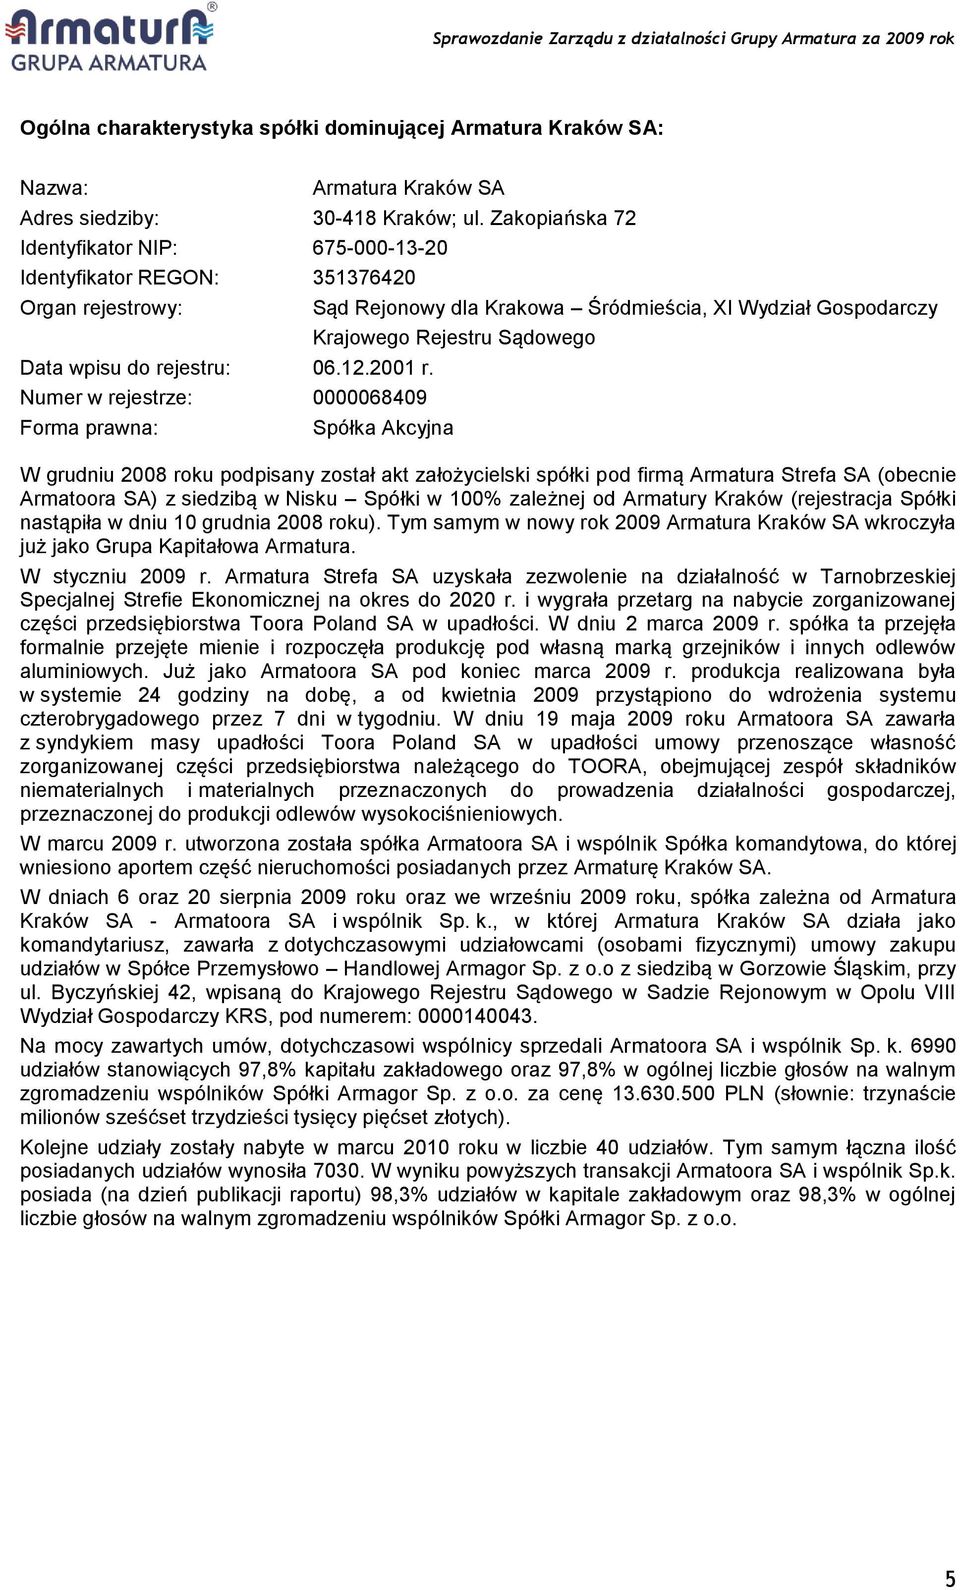 Numer w rejestrze: 0000068409 Forma prawna: Sąd Rejonowy dla Krakowa Śródmieścia, XI Wydział Gospodarczy Krajowego Rejestru Sądowego Spółka Akcyjna W grudniu 2008 roku podpisany został akt